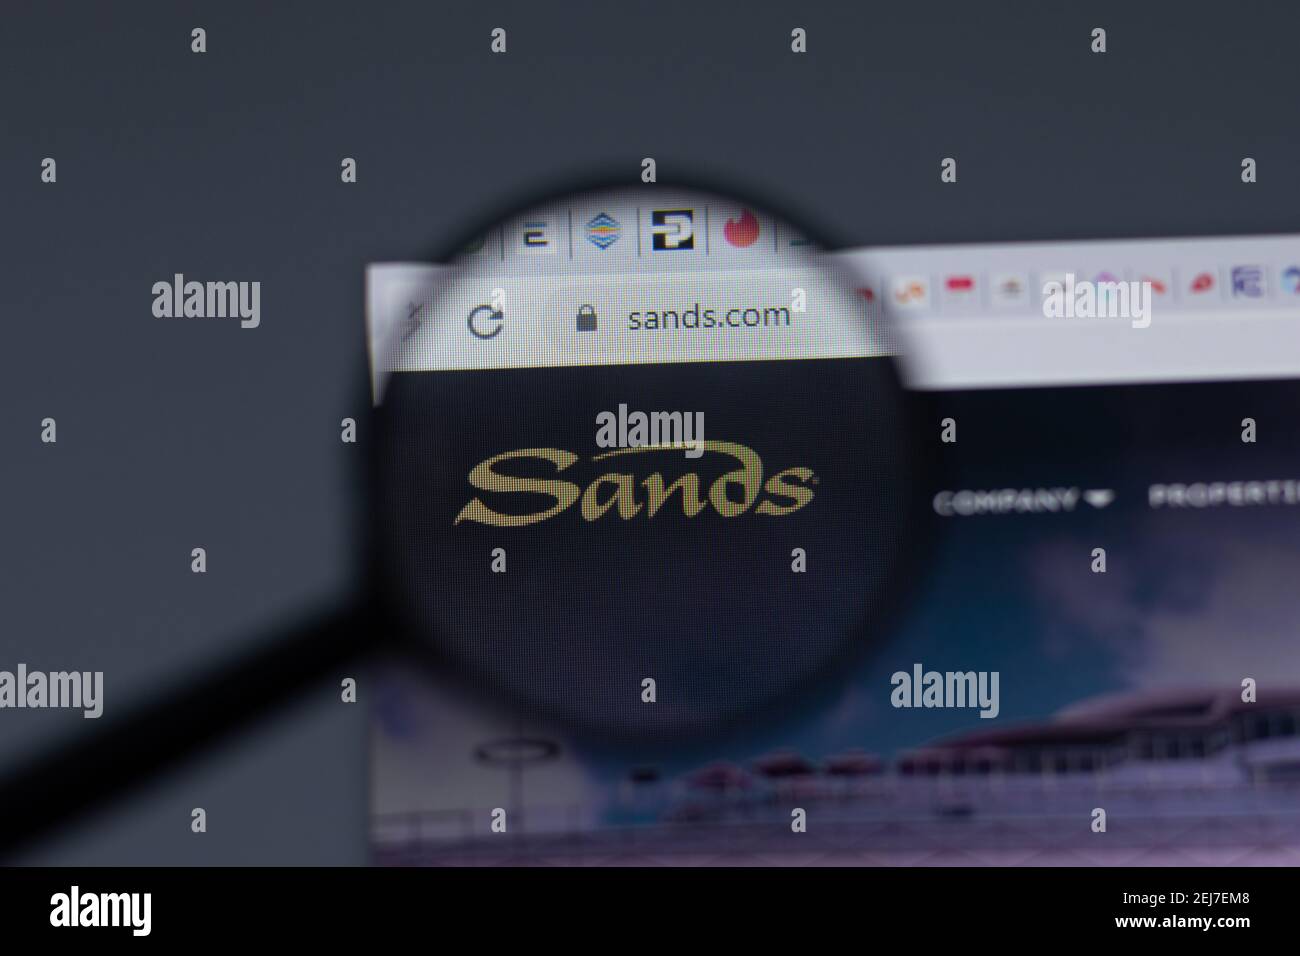 157 Las Vegas Sands Corporation Images, Stock Photos, 3D objects, & Vectors